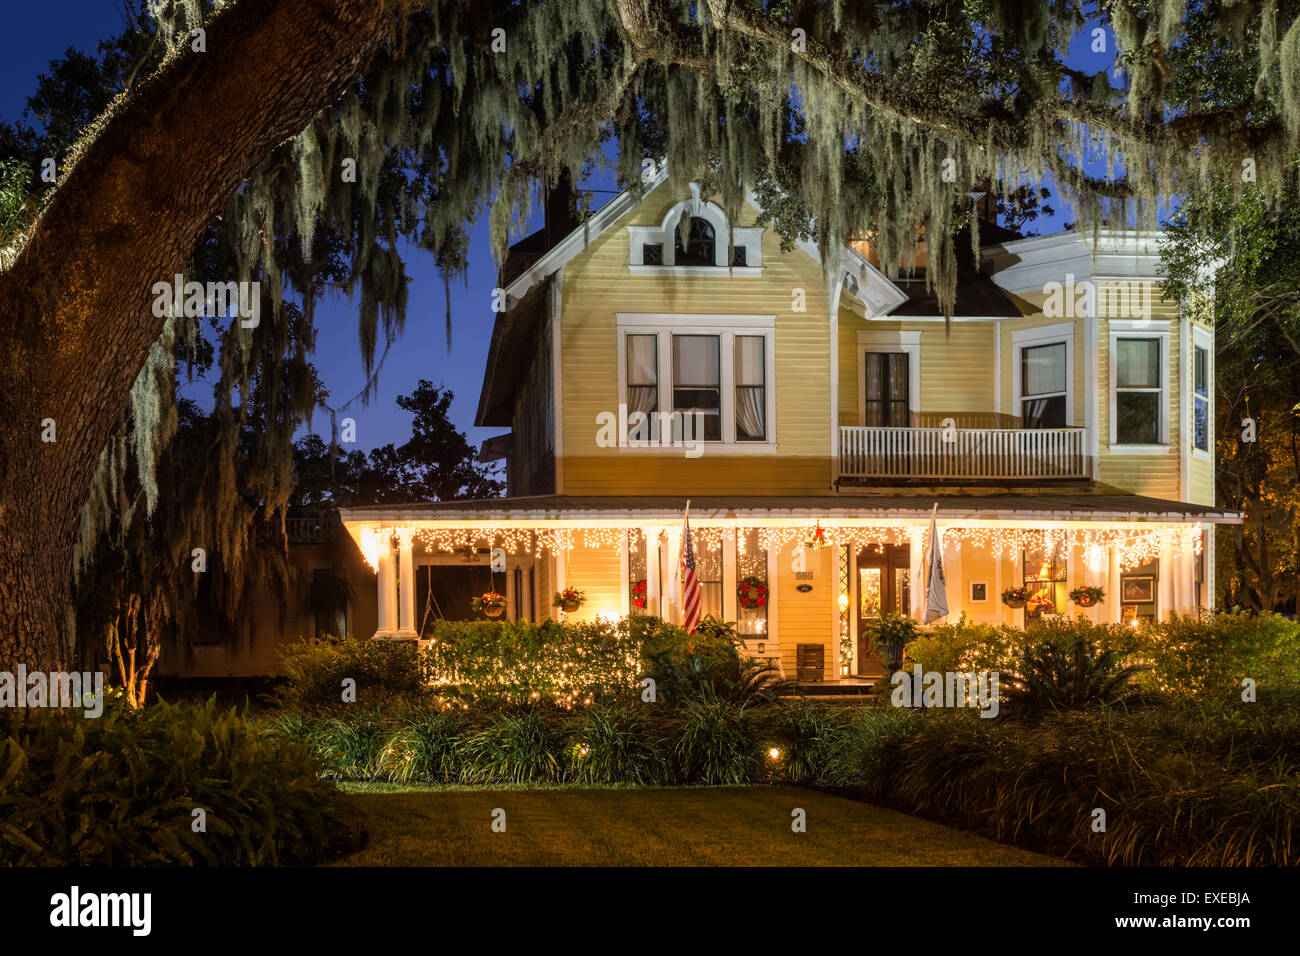 Le Hoyt House Bed and Breakfast Décorées pour Noël, Amelia Island, Floride Banque D'Images